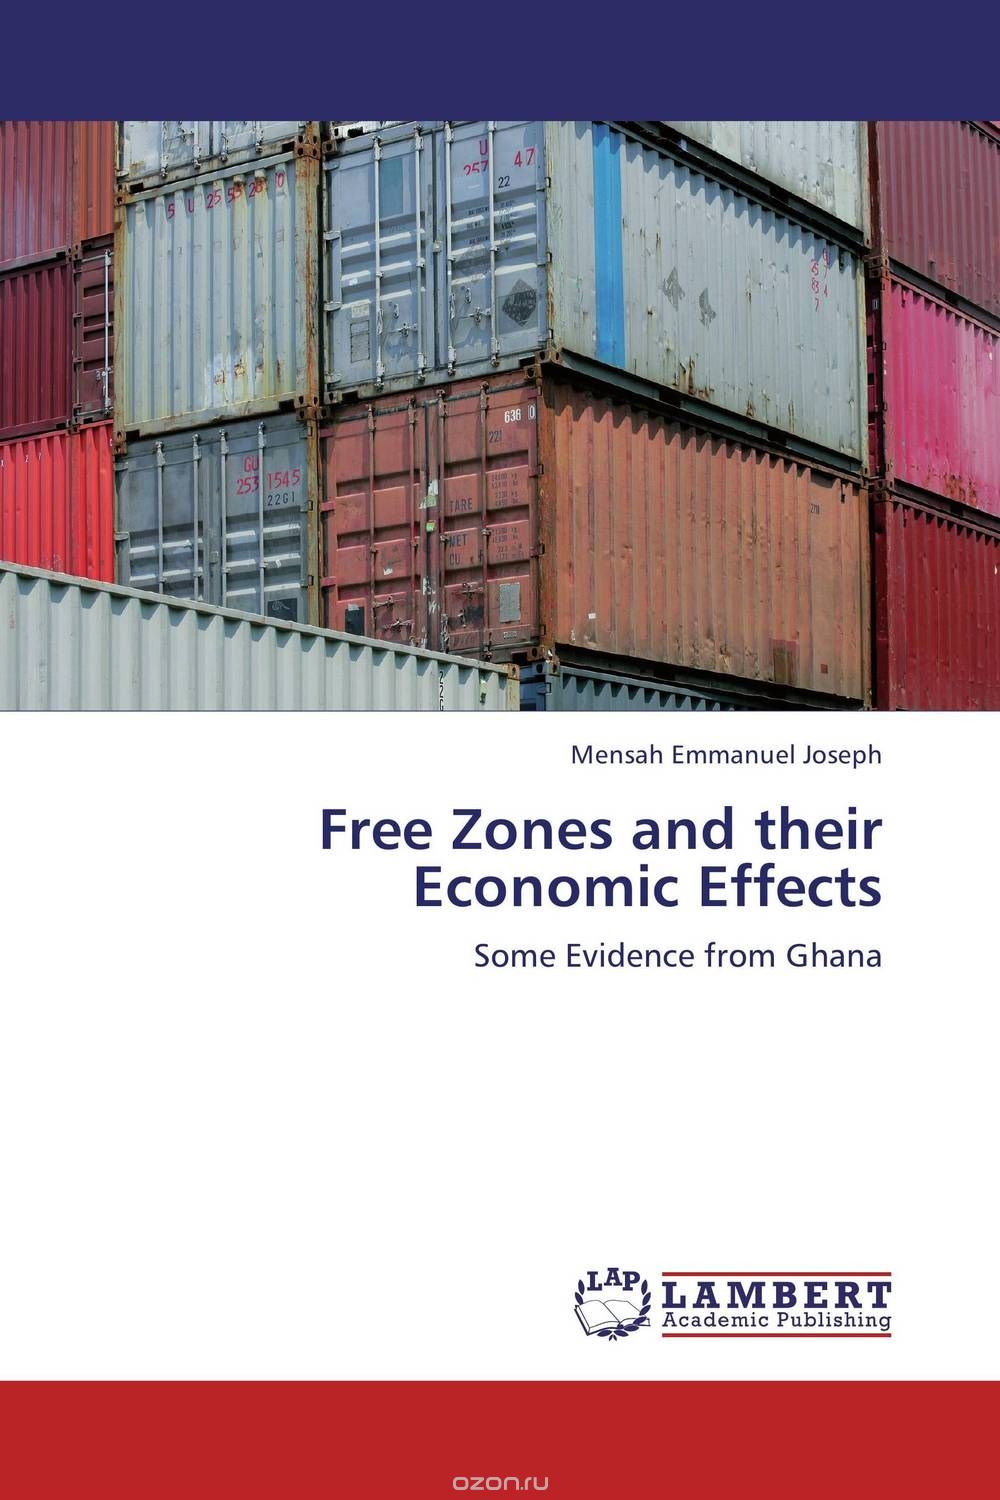 Скачать книгу "Free Zones and their Economic Effects"